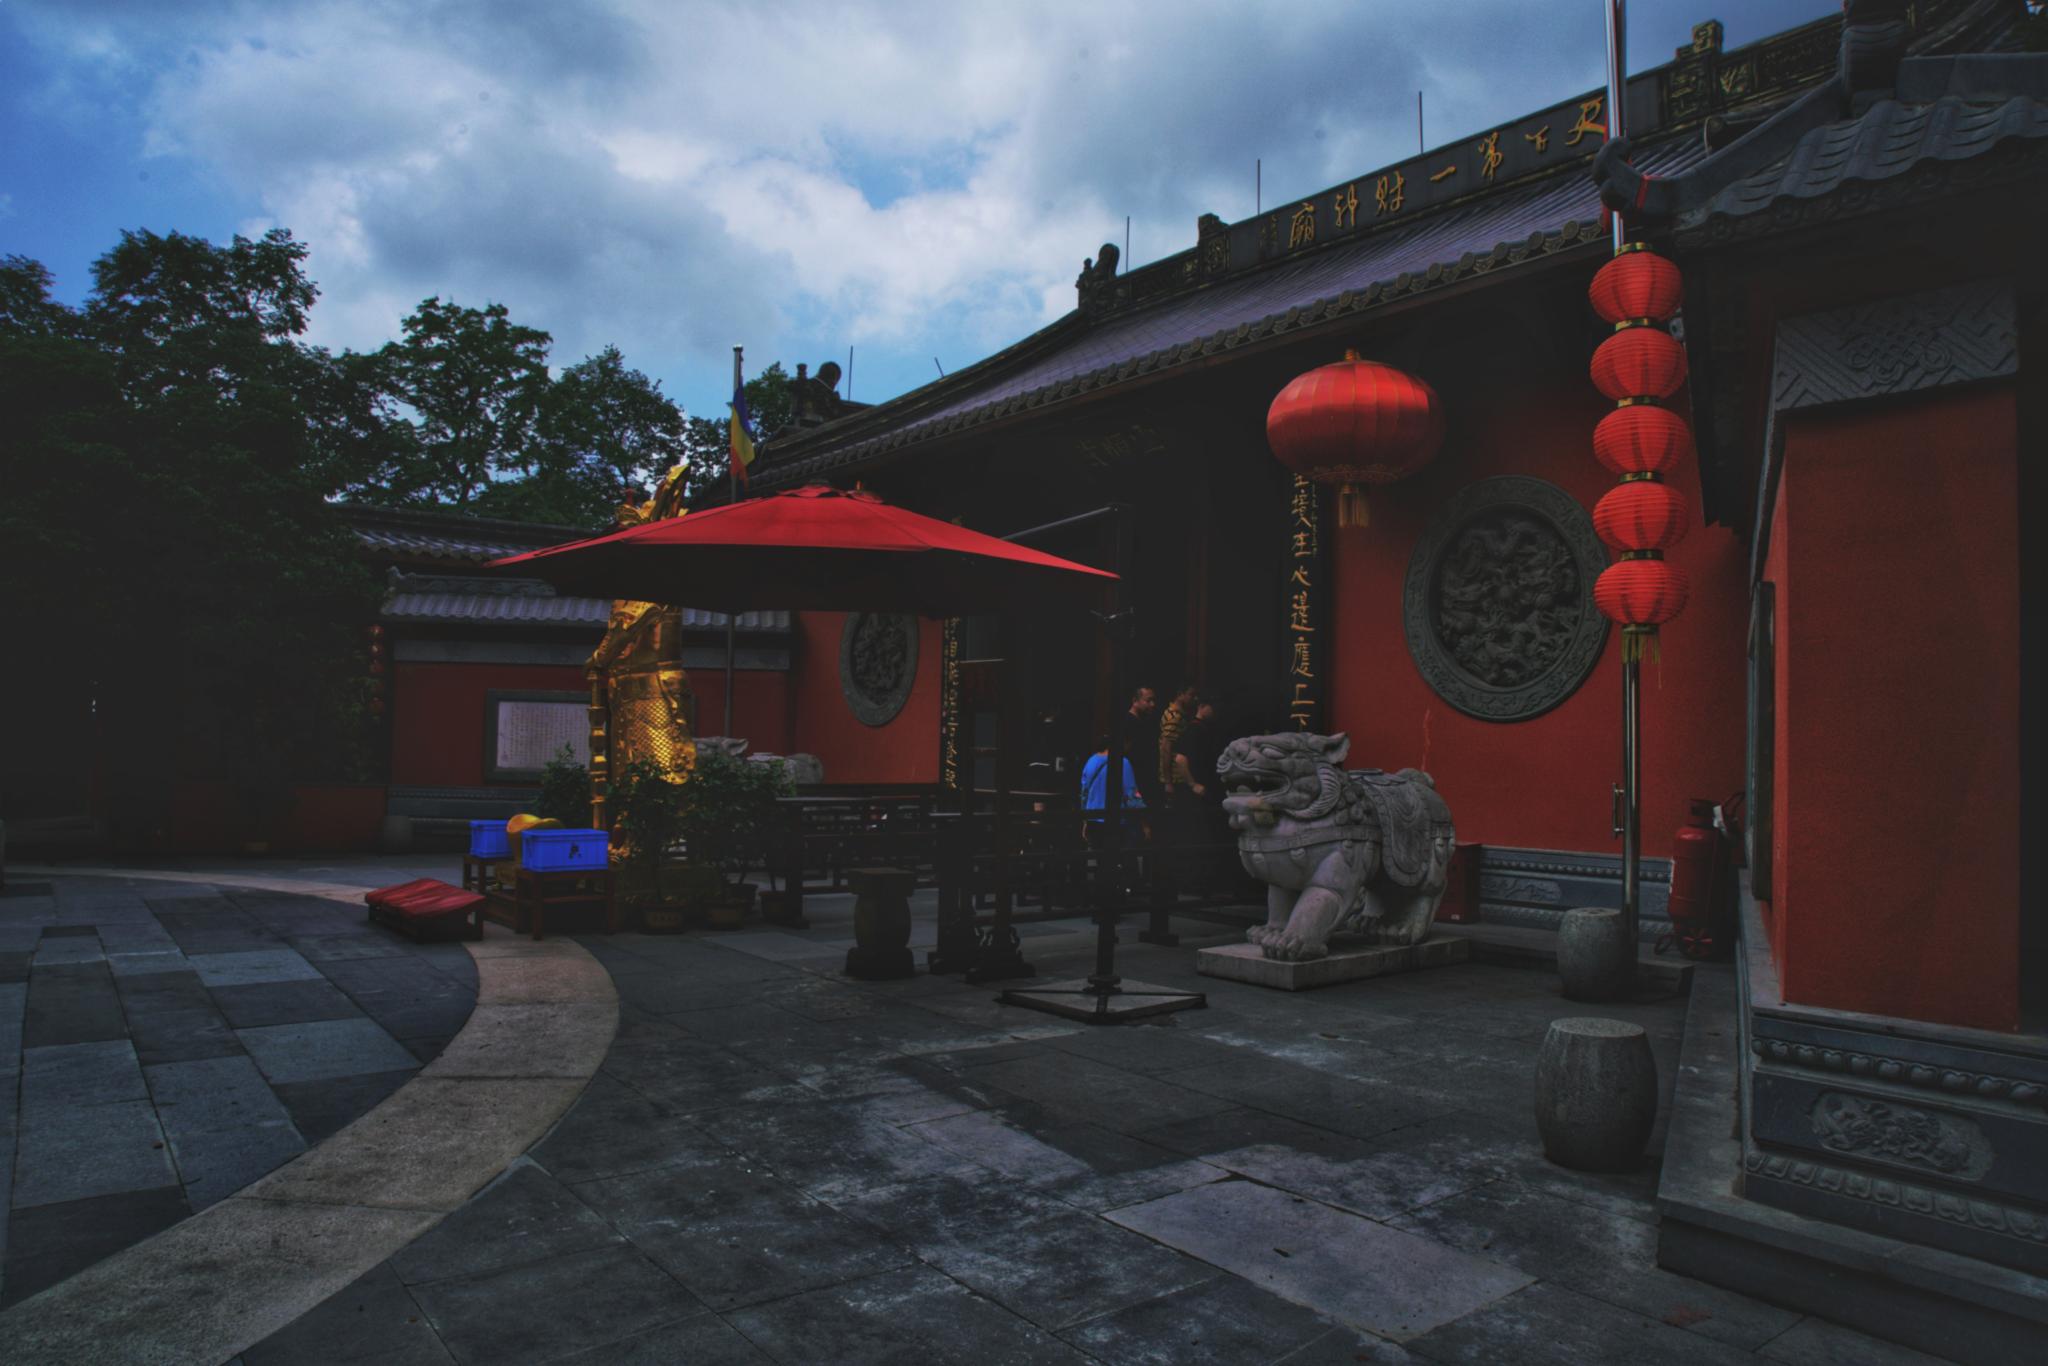 天下第一财神庙灵顺寺灵顺寺位于杭州北高峰山巅拥有想当当的名字天下